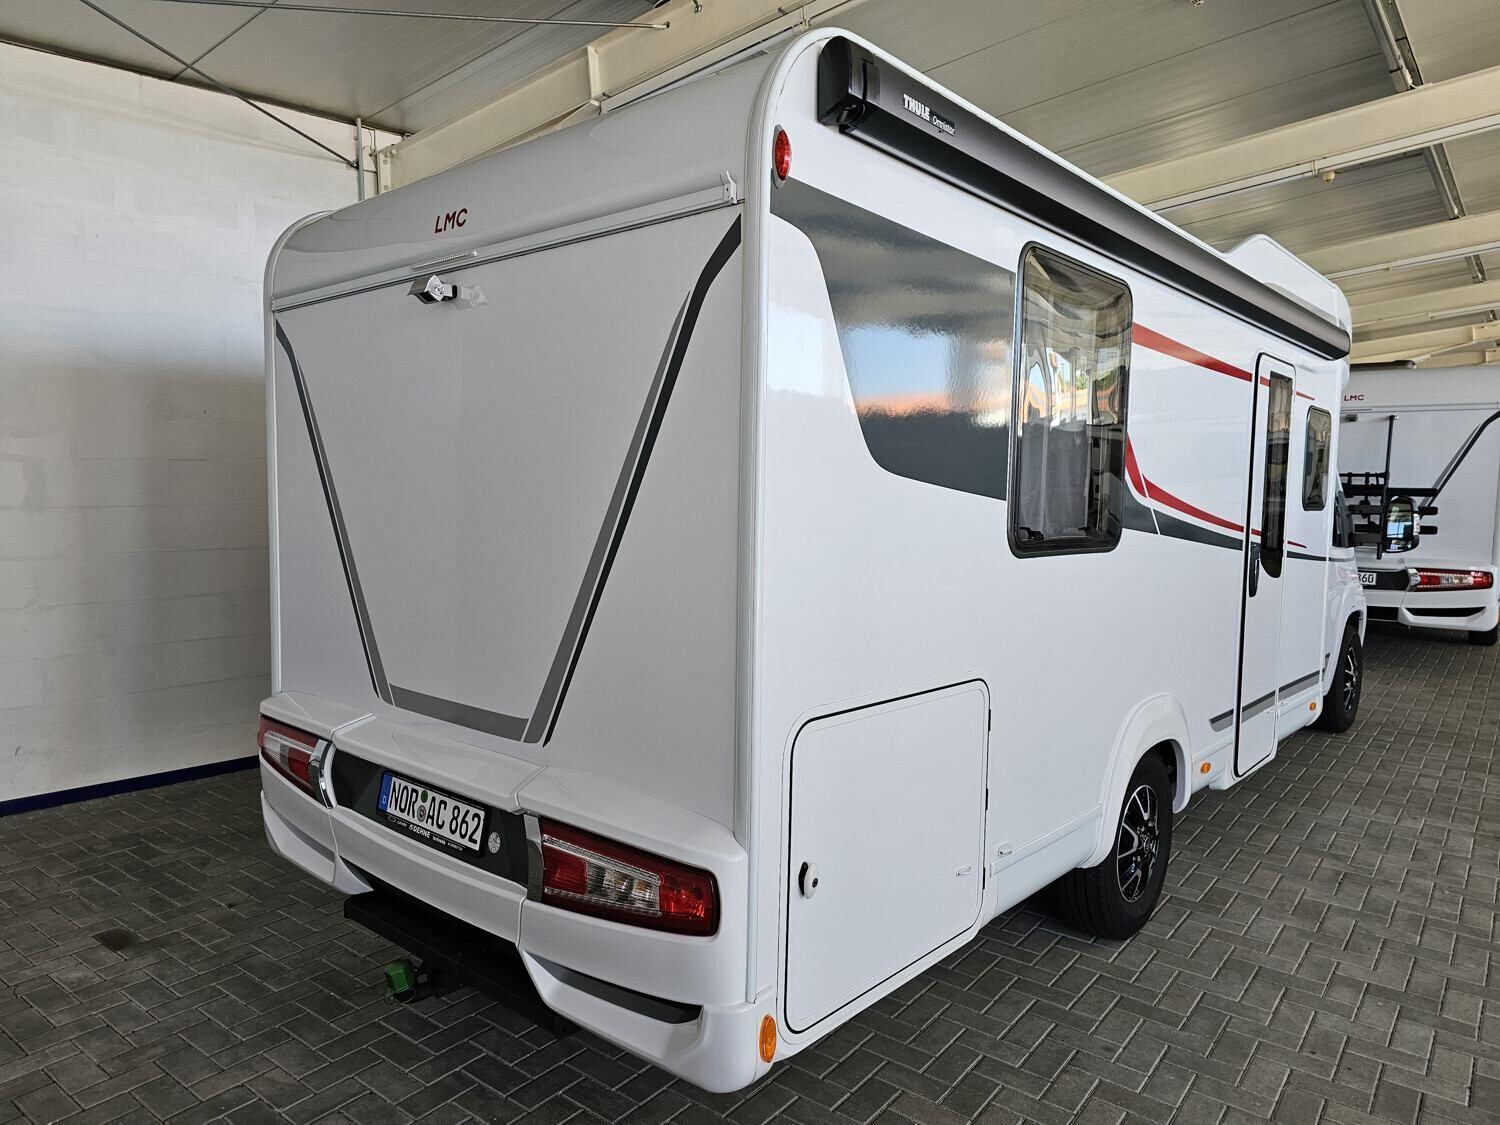 Wohnmobil 🚐 LMC Tourer Lift H 664 G auf Lager kaufen